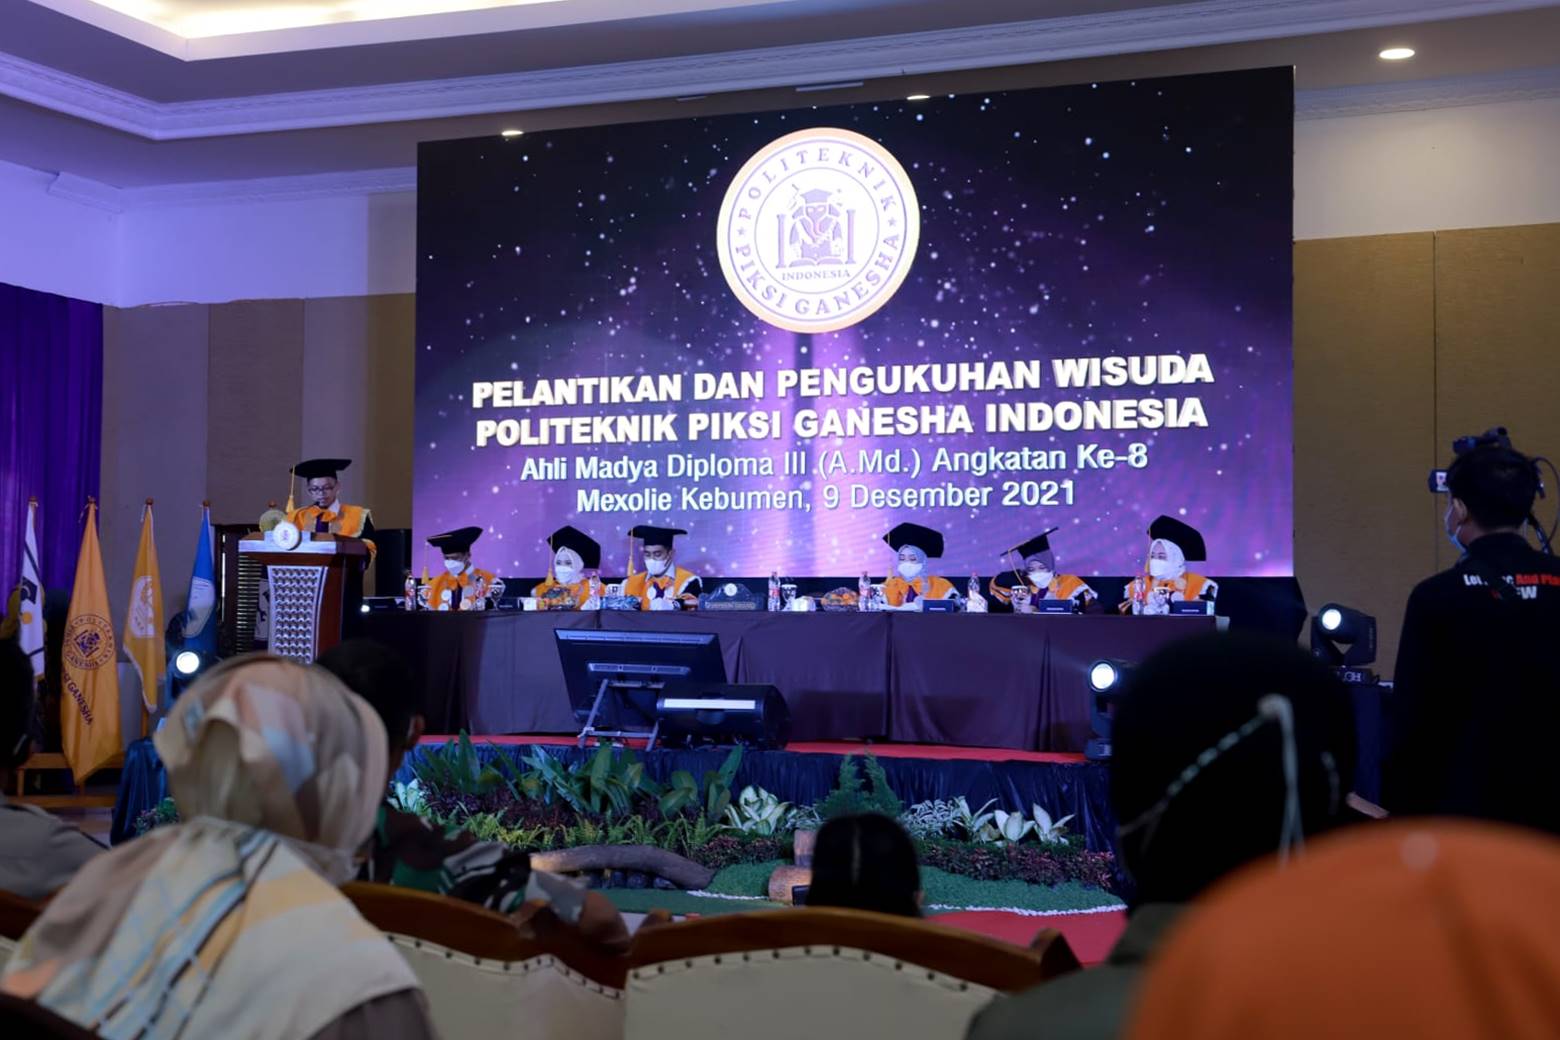 90 Mahasiwa Politeknik Piksi Ganesha Indonesia Kebumen Diwisuda